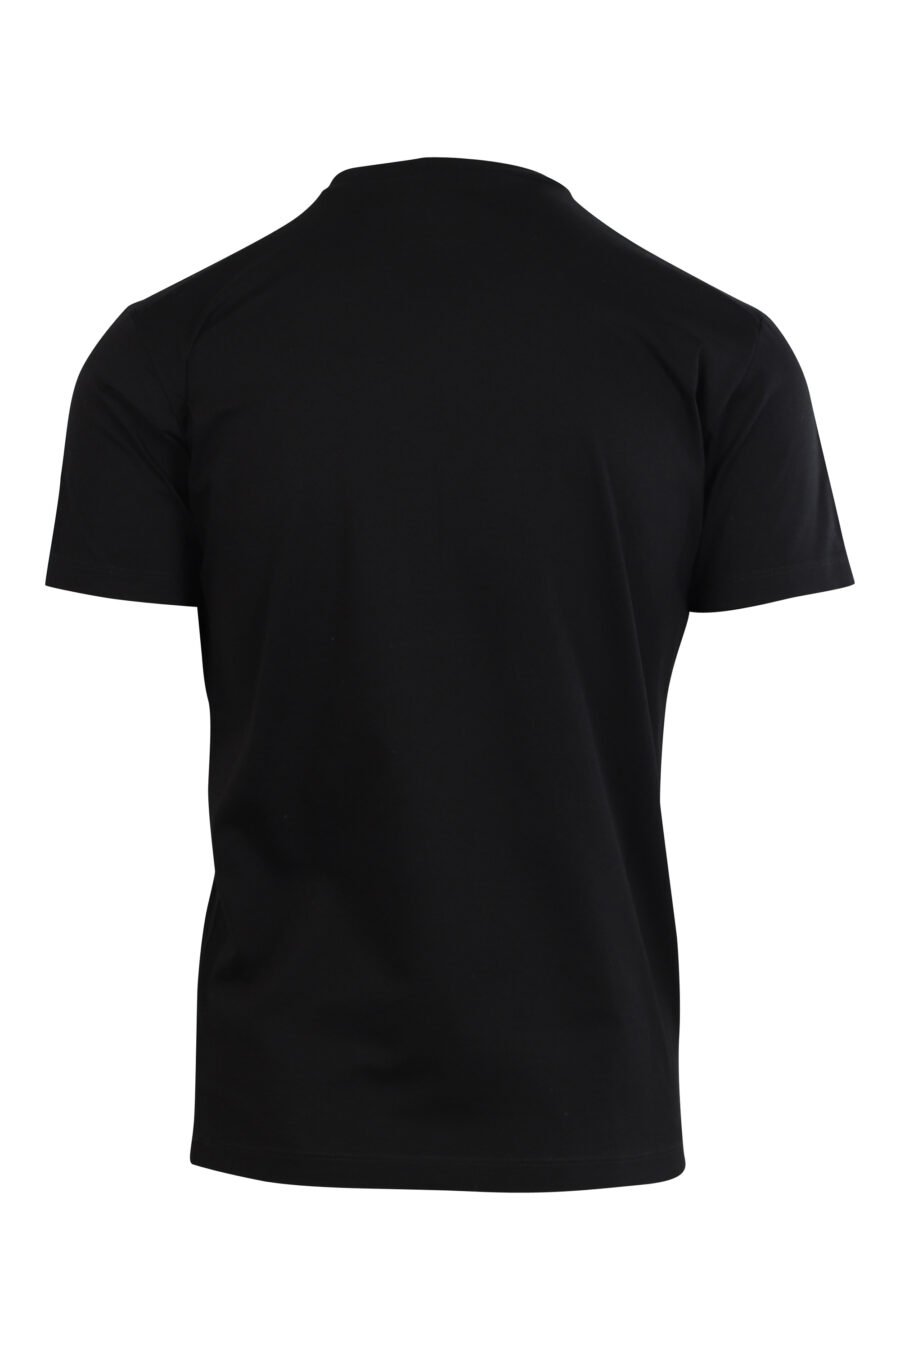 T-shirt noir avec minilogue centré - 8058049841681 2